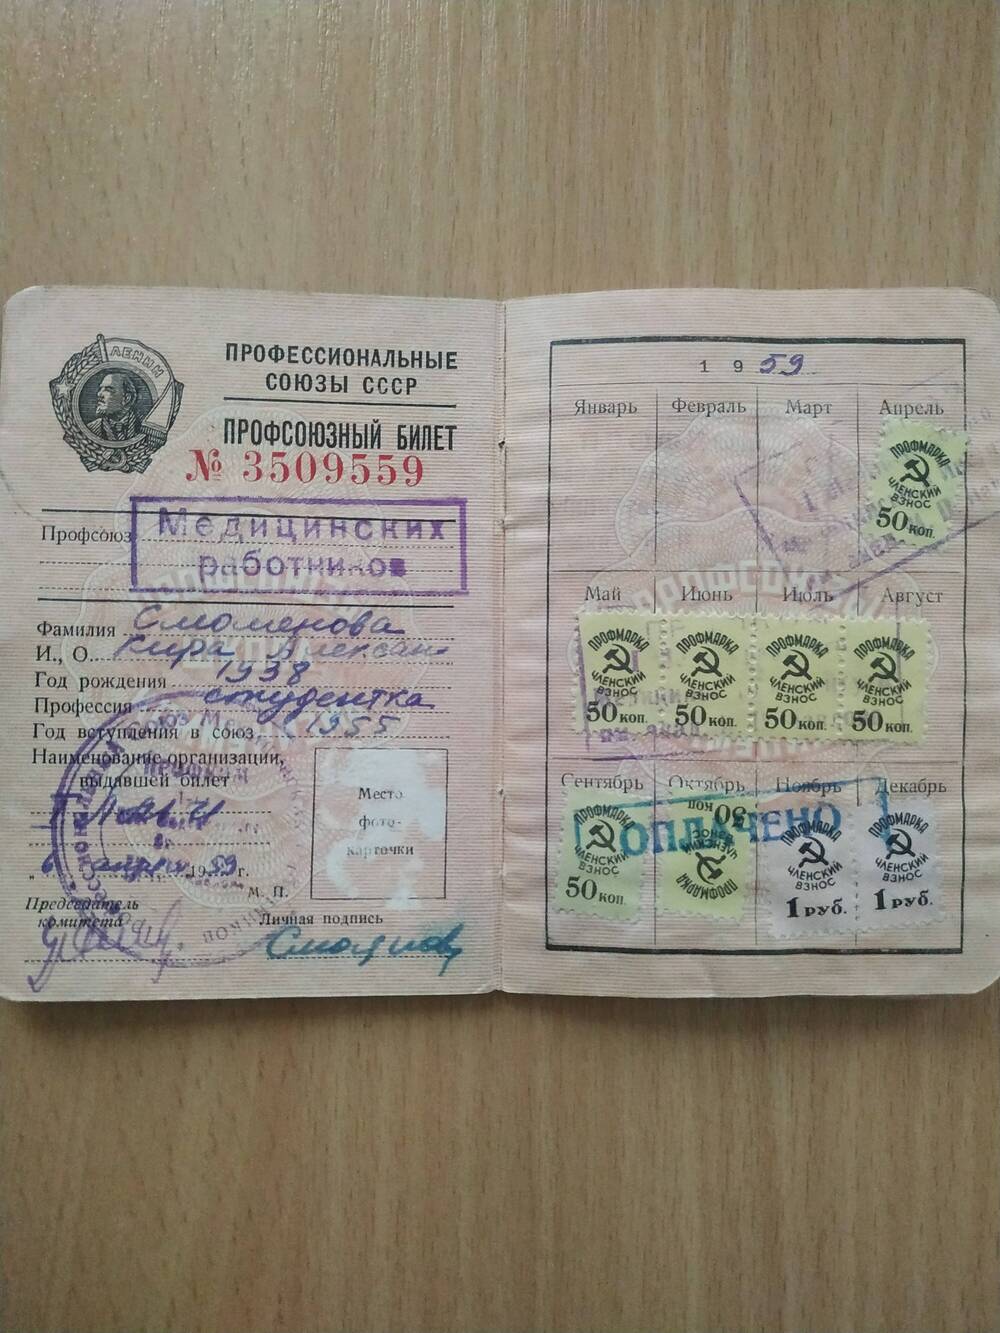 Профсоюзный билет Смоляновой К.А. №3509559 от 06.04.1959